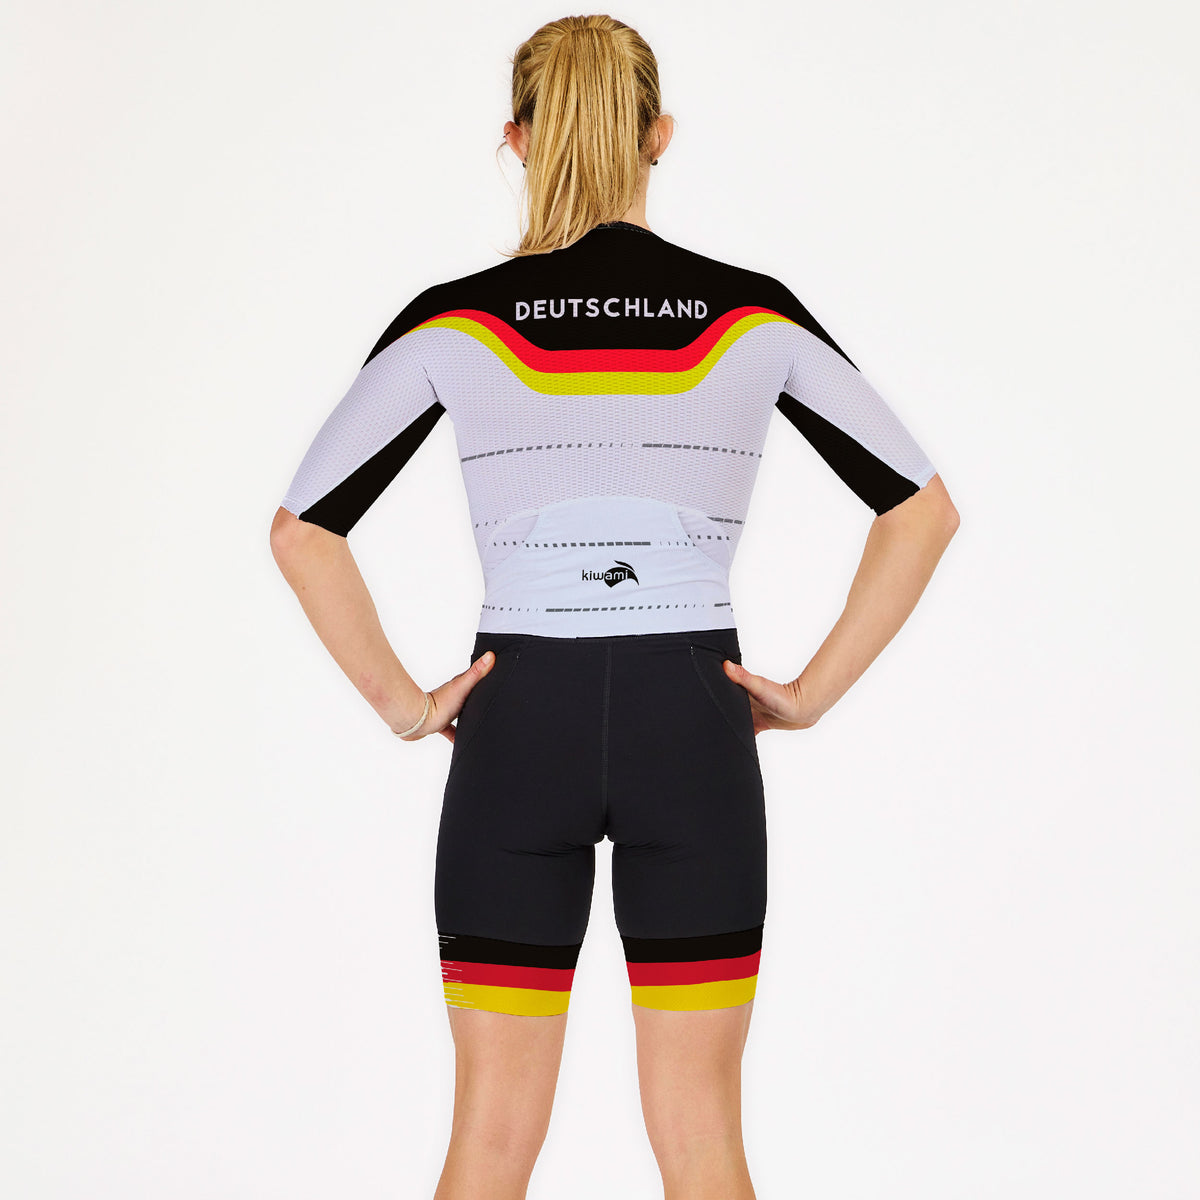 Kombination für Triathlon, eine Damen-Trisuit, speziell für Langdistanz-Triathlons wie Ironmans entwickelt